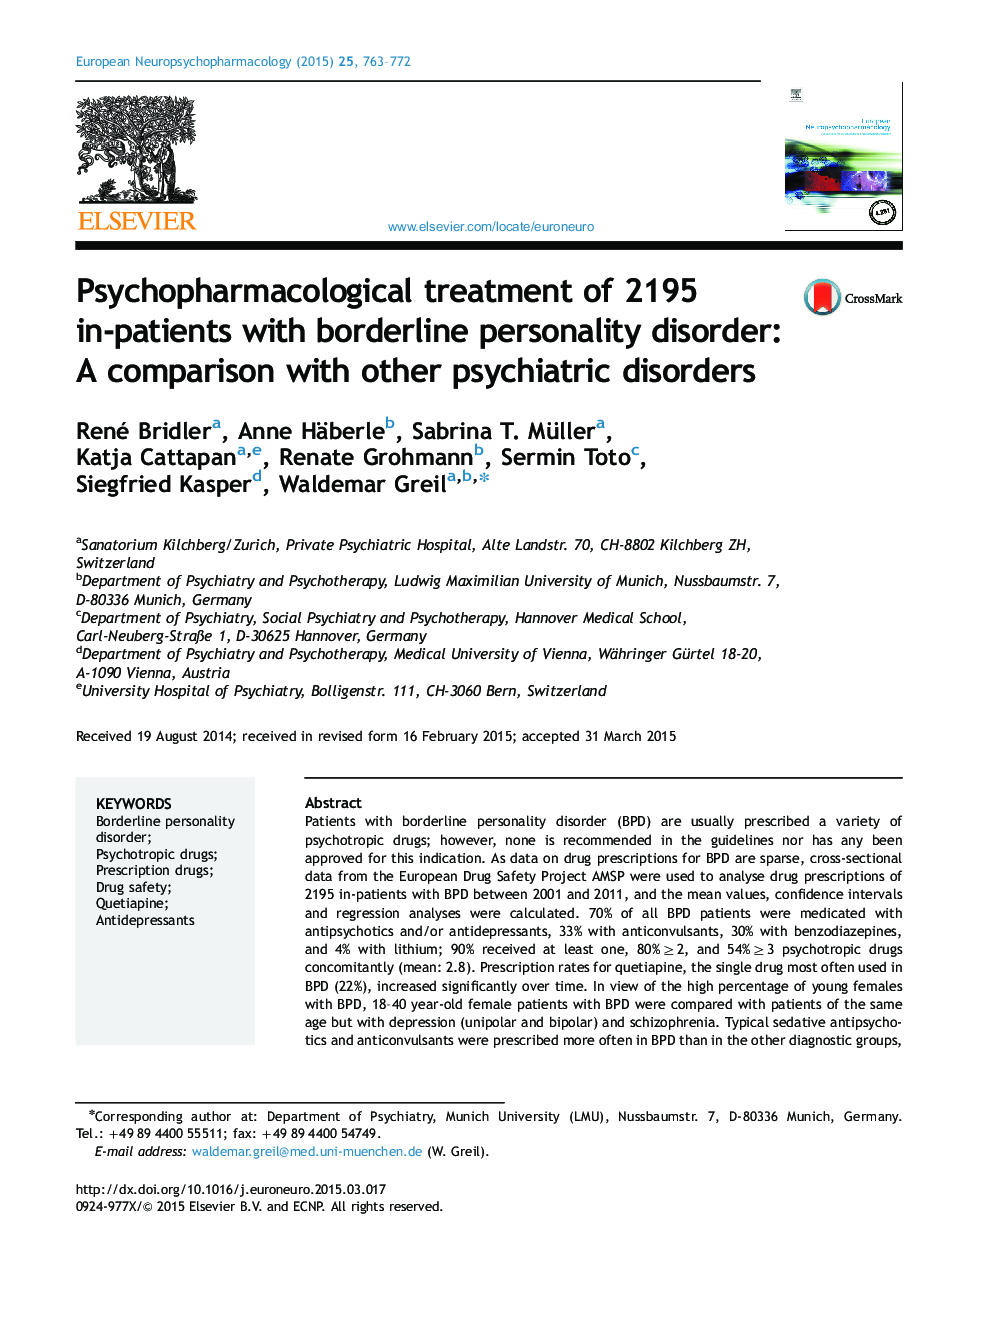 درمان روان بیهوشی 2195 بیمار مبتلا به اختلال شخصیت مرزی: مقایسهای با سایر اختلالات روانپزشکی 